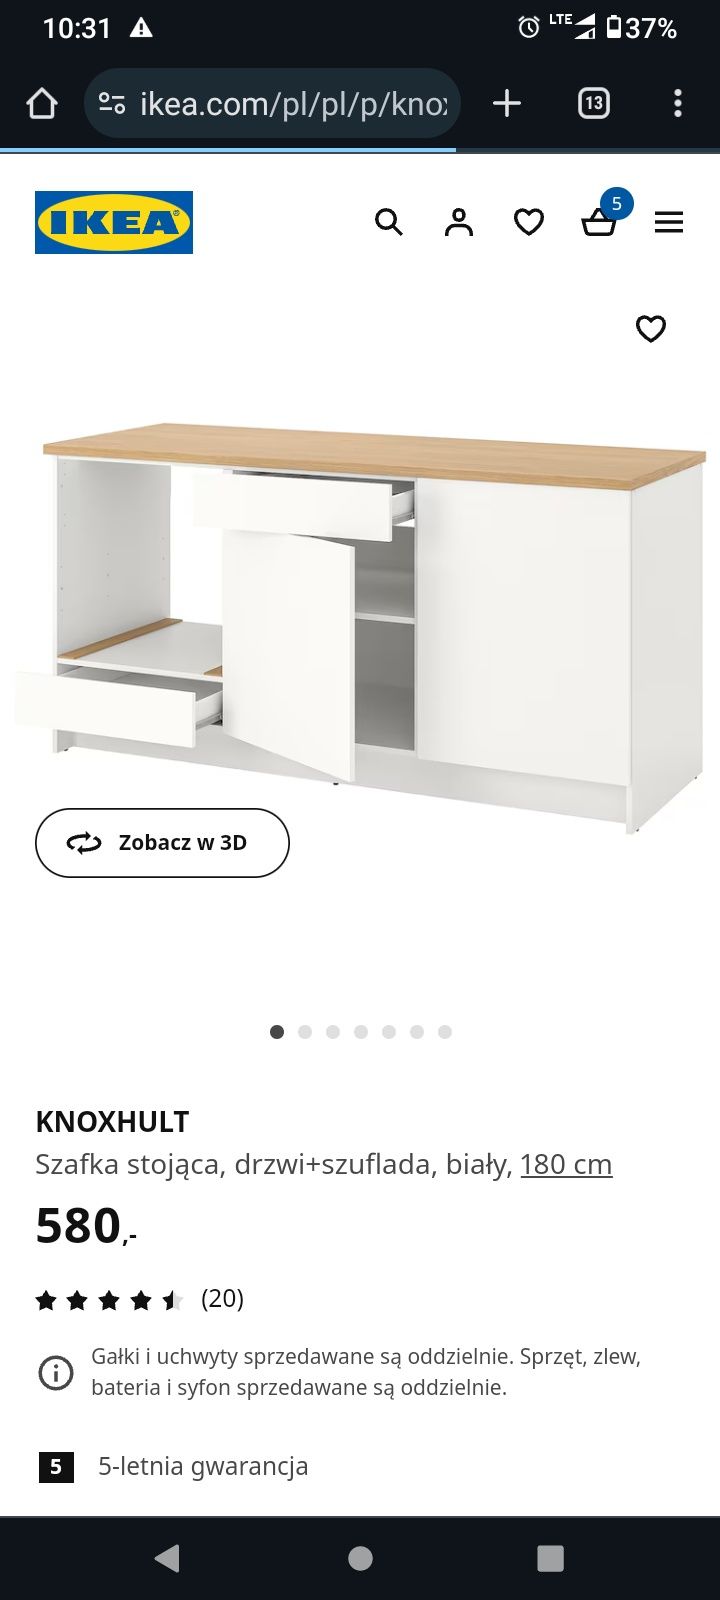 Szafka kuchenna/komoda Ikea knoxhult 180 cm